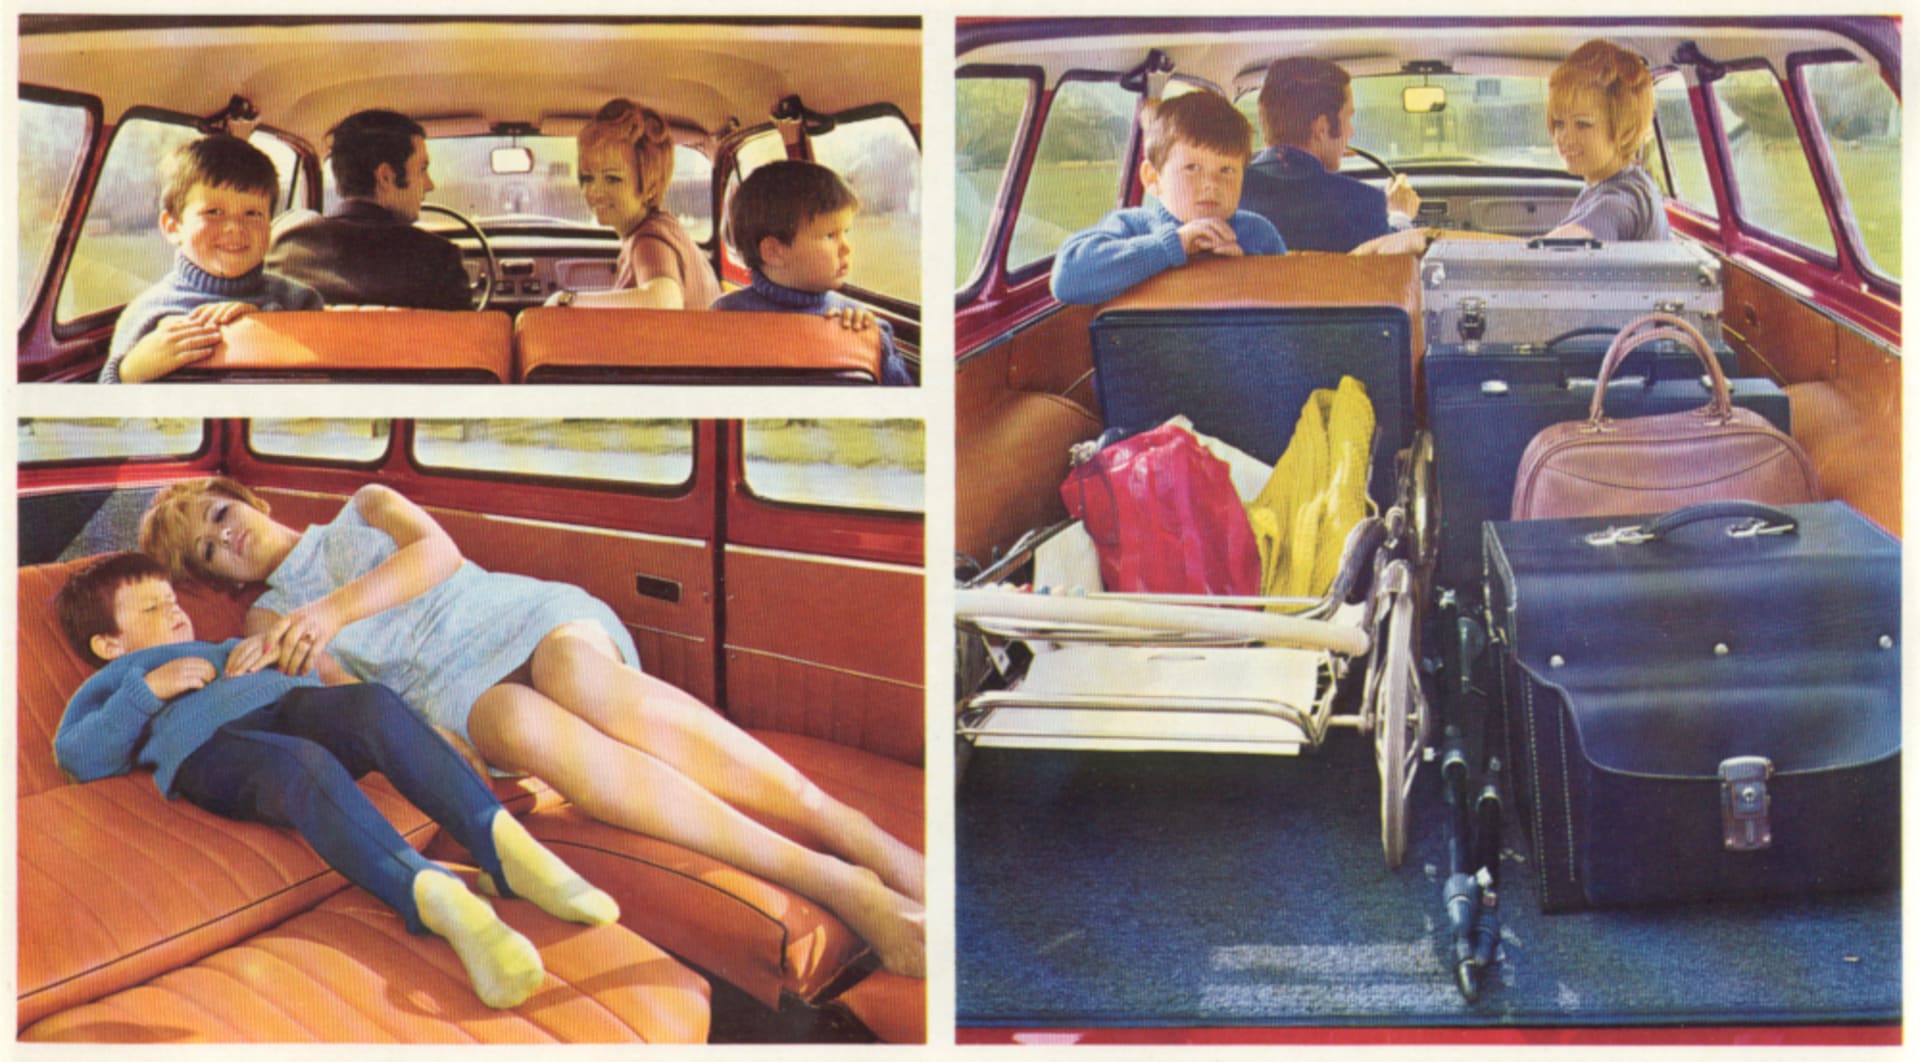 Škoda Octavia combi vyráběná v 60. letech lůžkovou úpravu propagovala v reklamním prospektu.